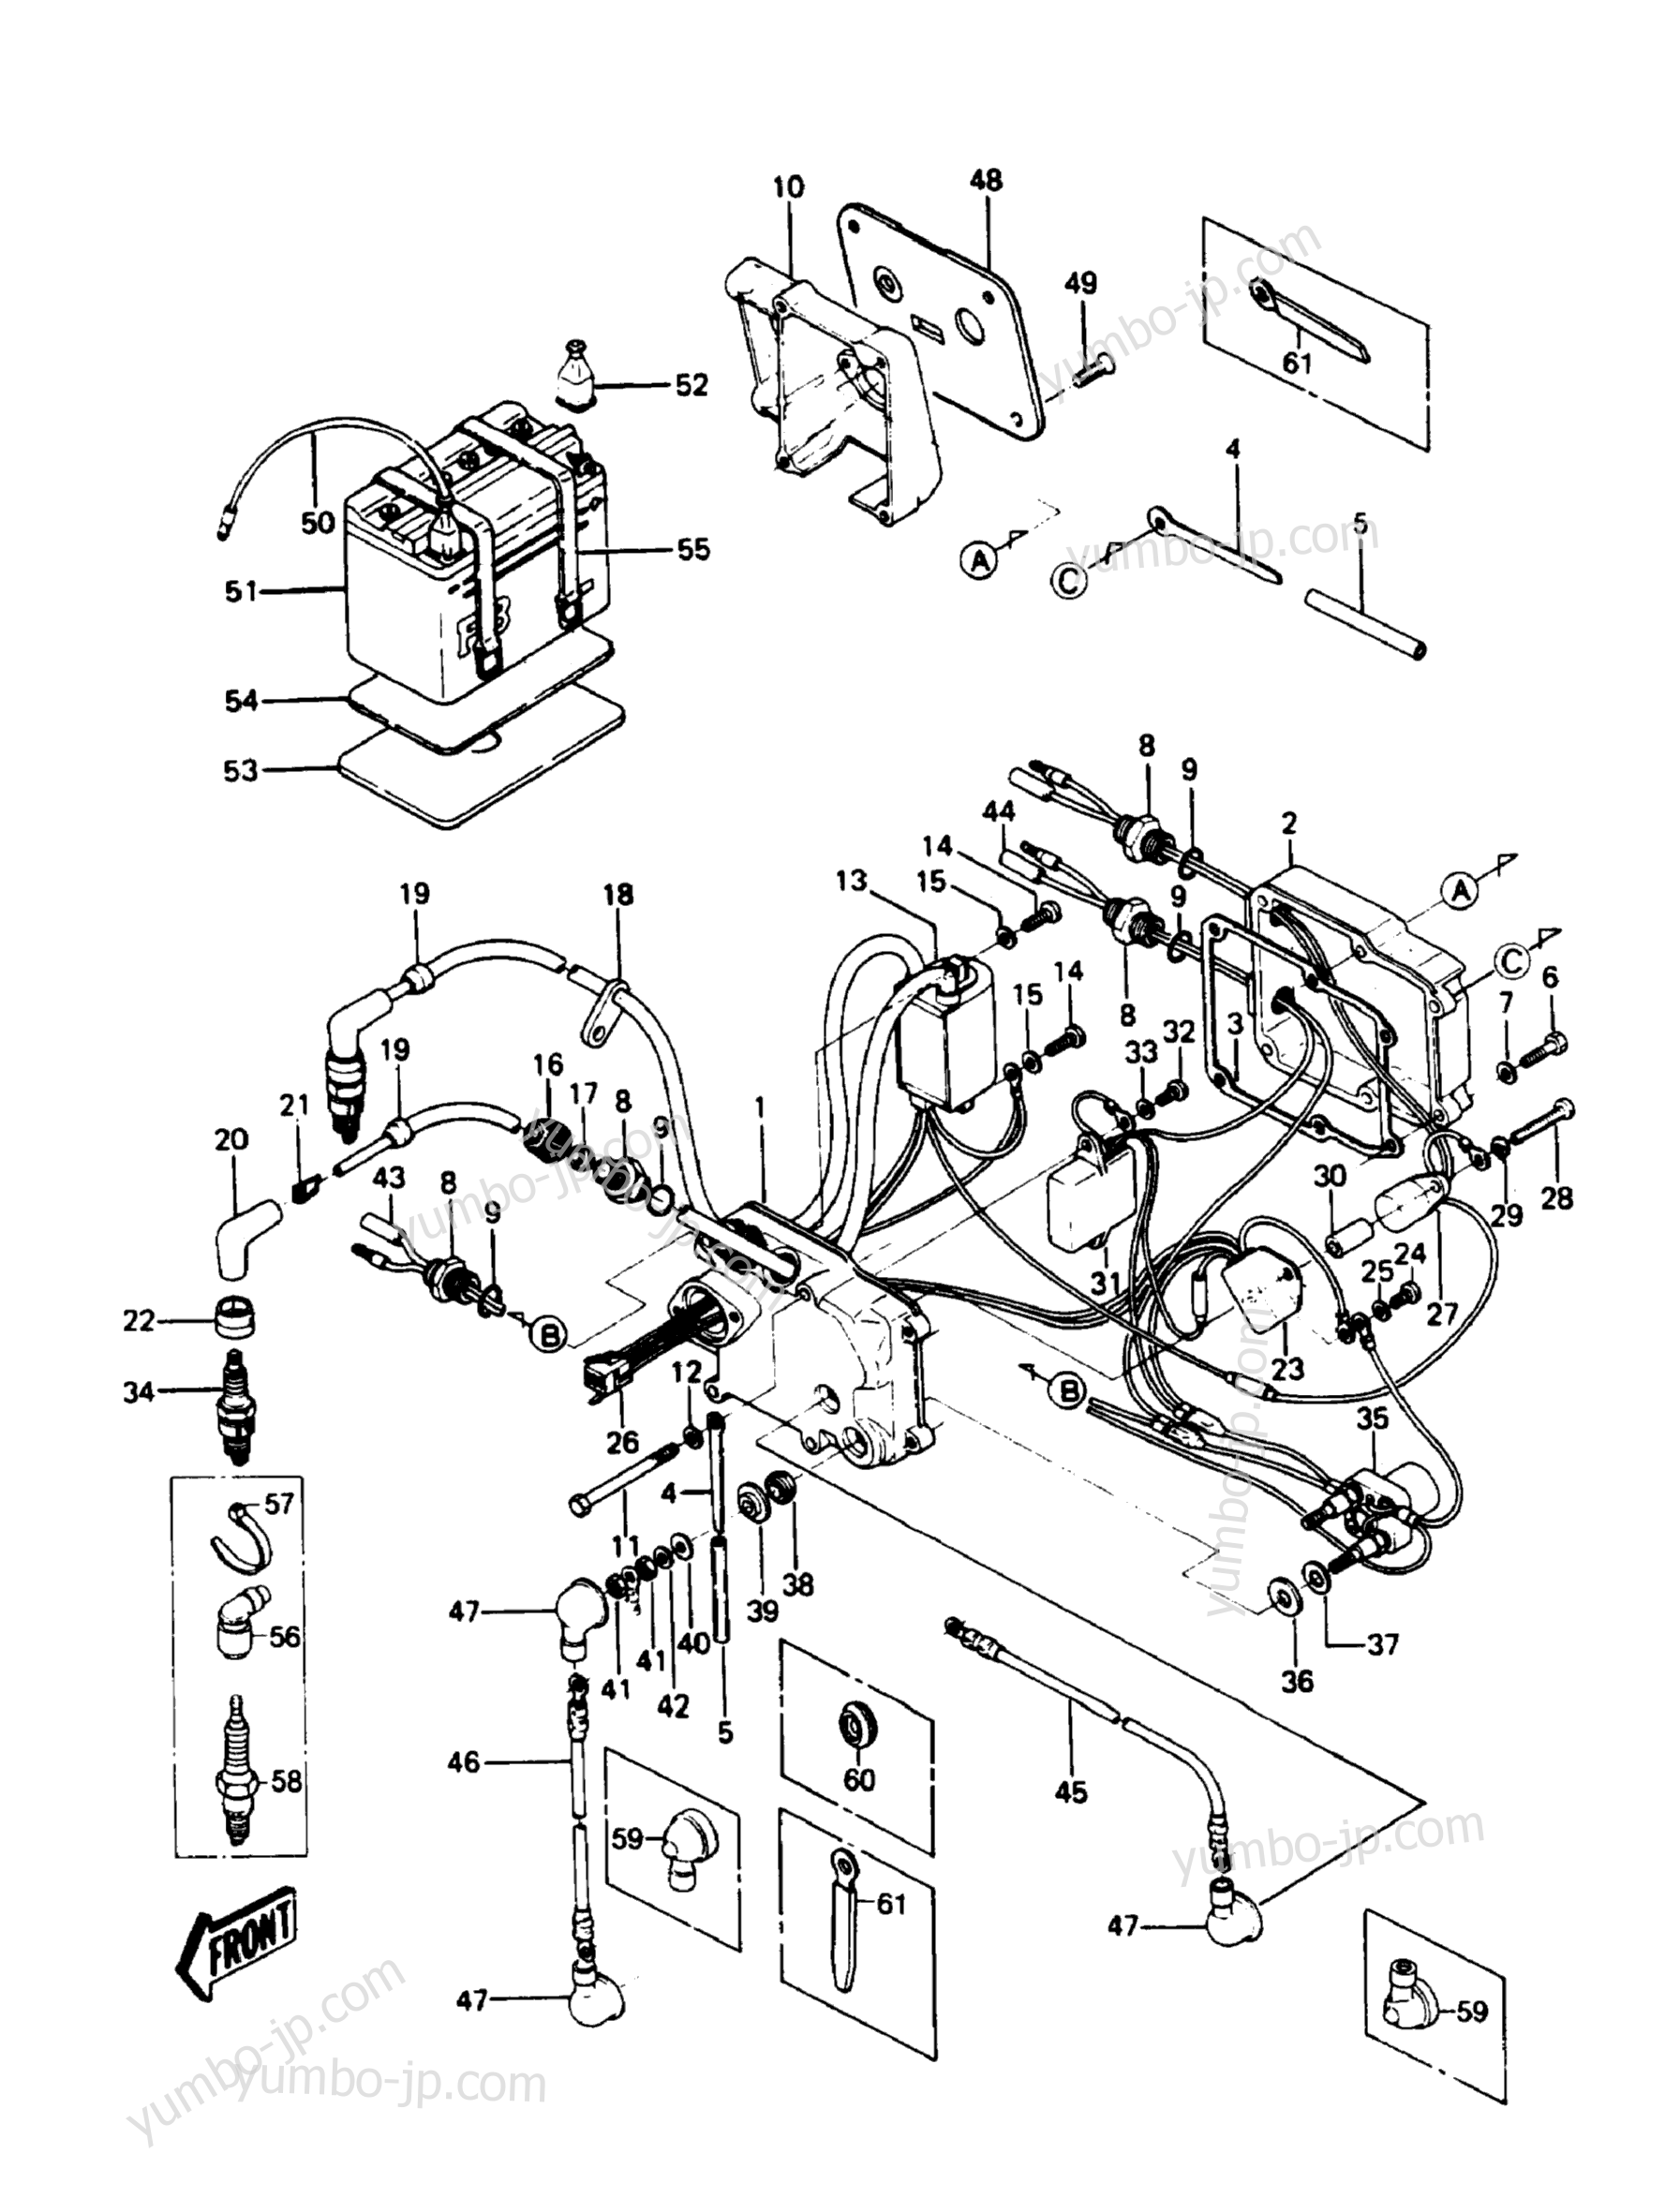 Electric Case для гидроциклов KAWASAKI JST SKI 550 (JS550-A5) 1986 г.